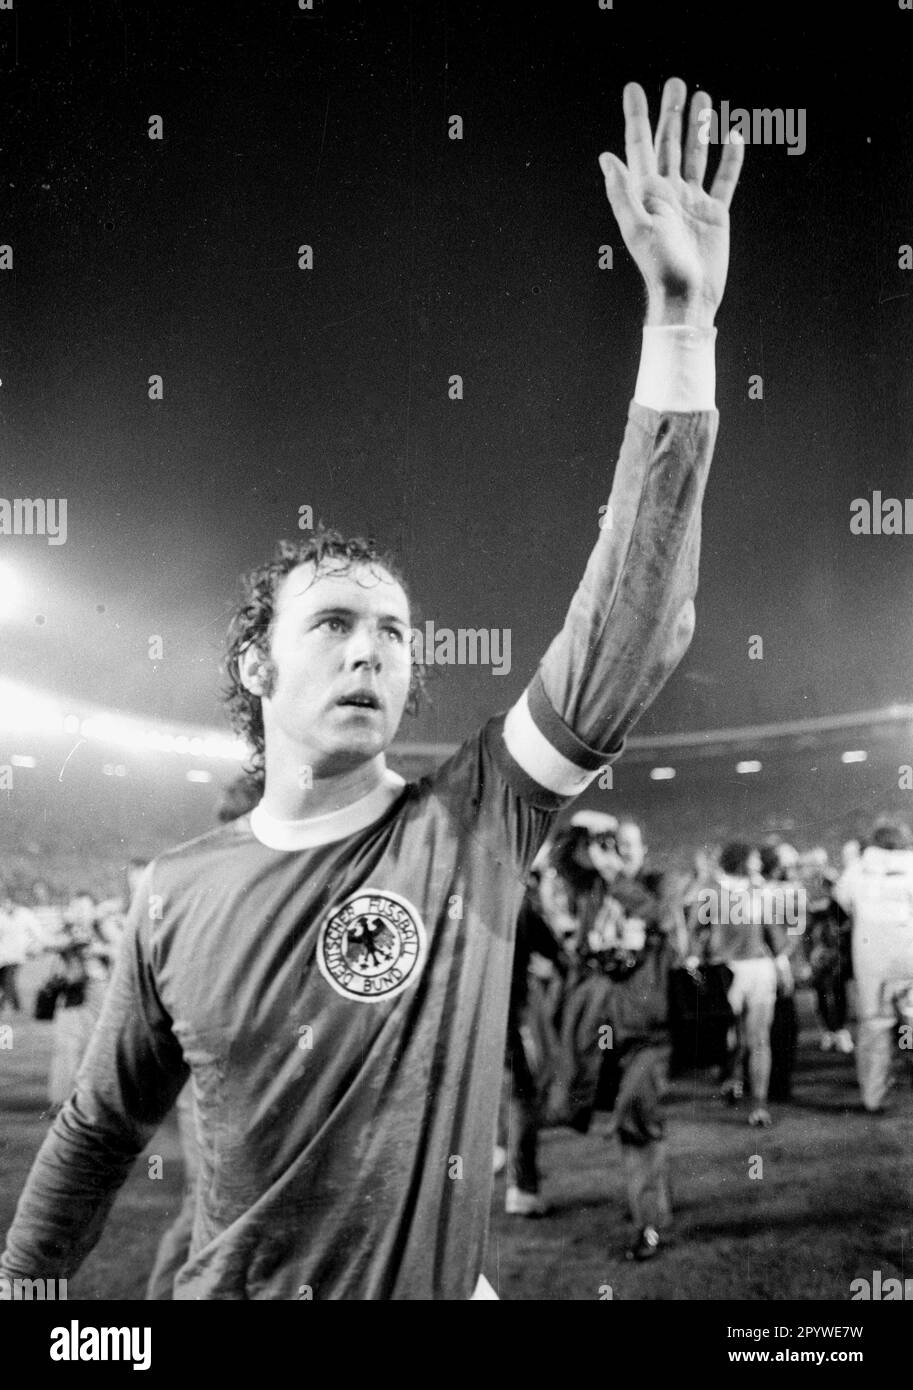 Coupe du monde de football 1974 2nd ronde / BR Allemagne - Suède 4:2 / 30.06.1974 à Düsseldorf / Franz Beckenbauer vagues après le match [traduction automatique] Banque D'Images